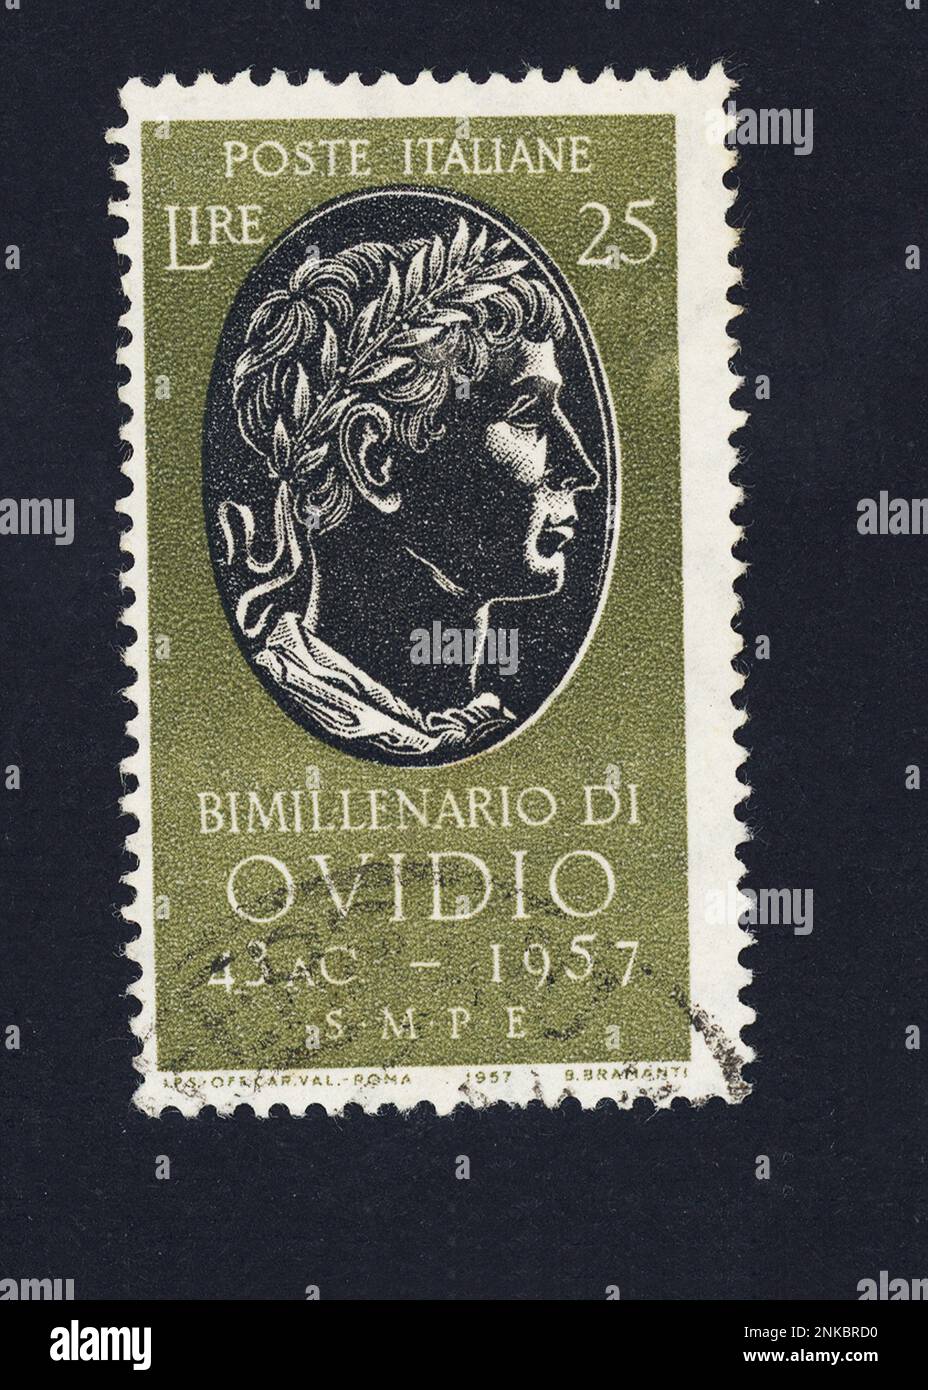 Der lateinische Dichter Publio OVIDIO Nasone ( sulmona 43 b.C - Tomi 17 A.C ) . Post Stamp Timber vom italienischen Postdienst 1957 - POETA LATINO - POESIA - POESIE - Francobollo-Gedenkstätte --- Archivio GBB Stockfoto